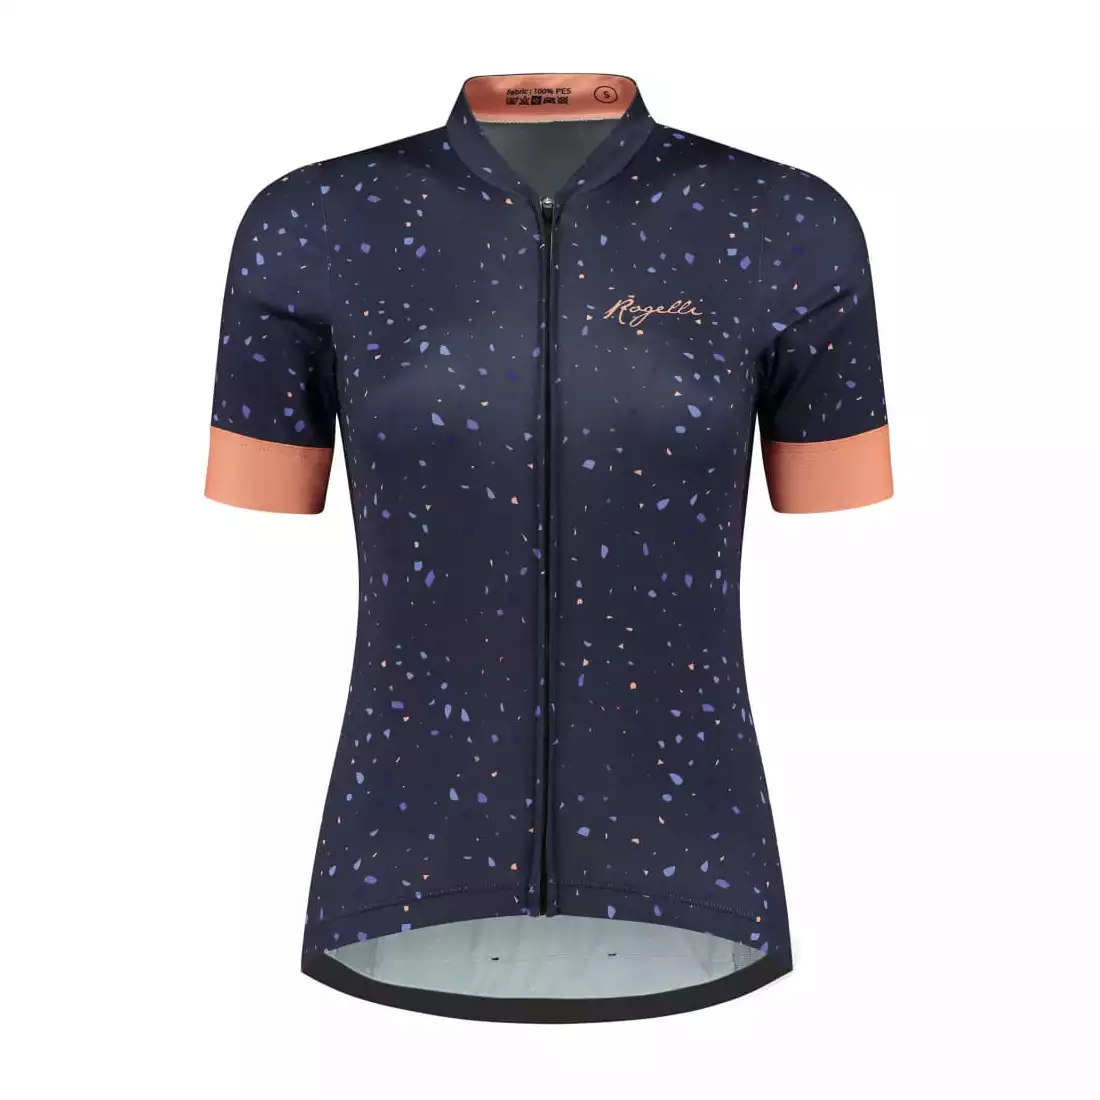 Rogelli TERRAZZO dámsky cyklistický dres, fialovo-koralový